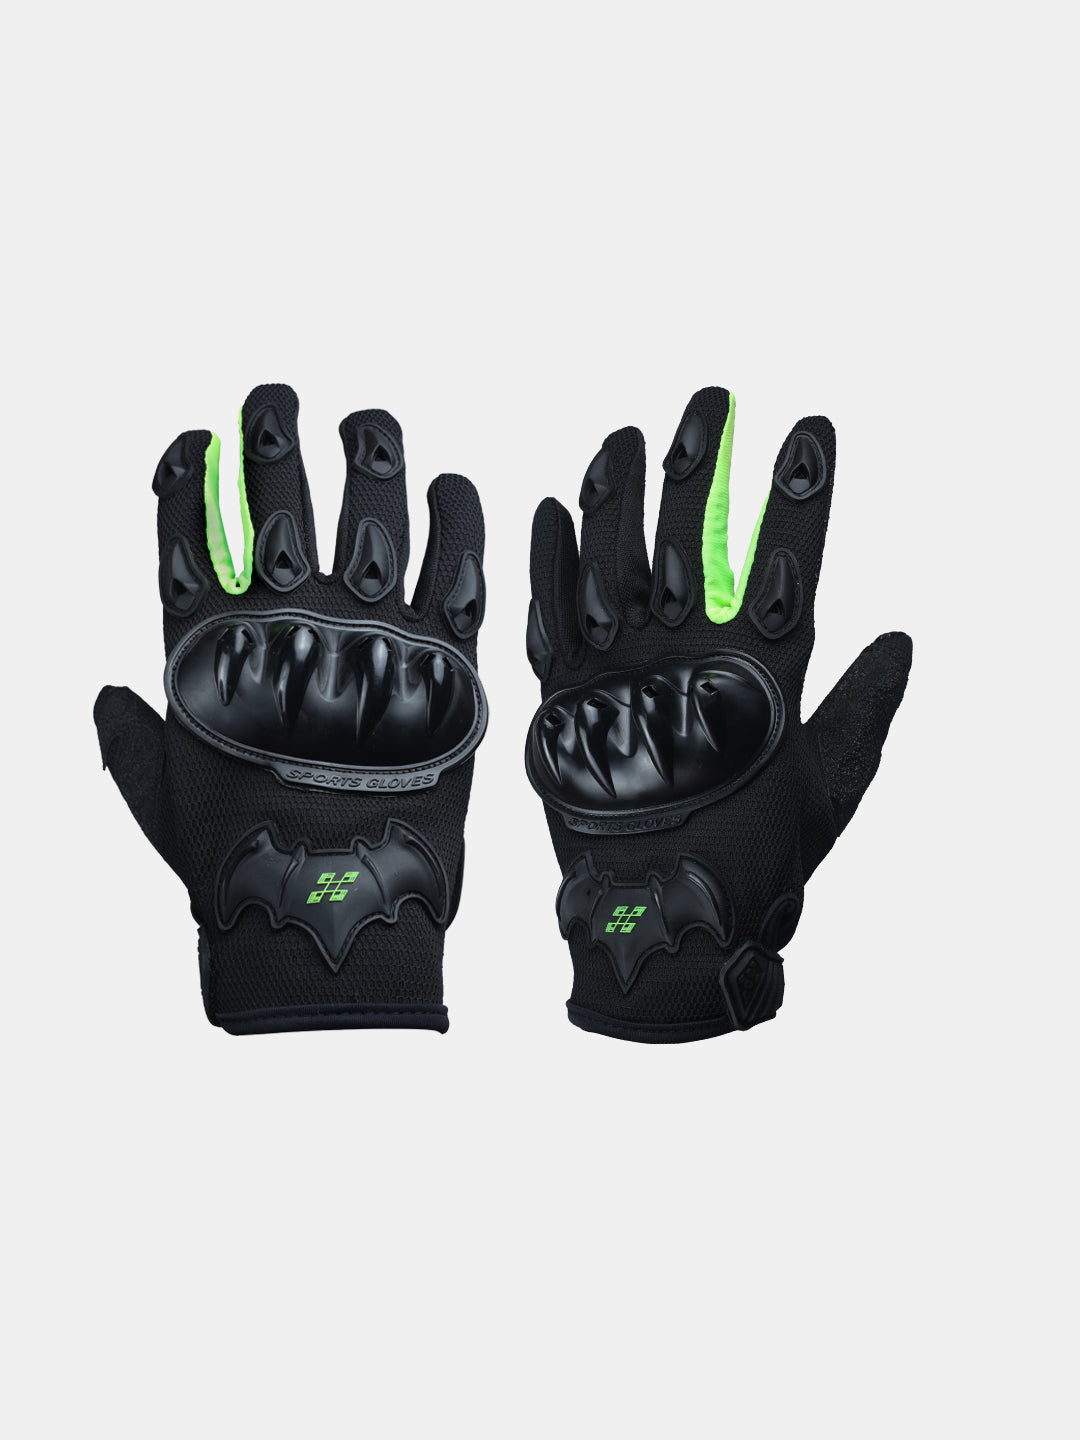 Masontex Gloves M33 Hi Viz Green